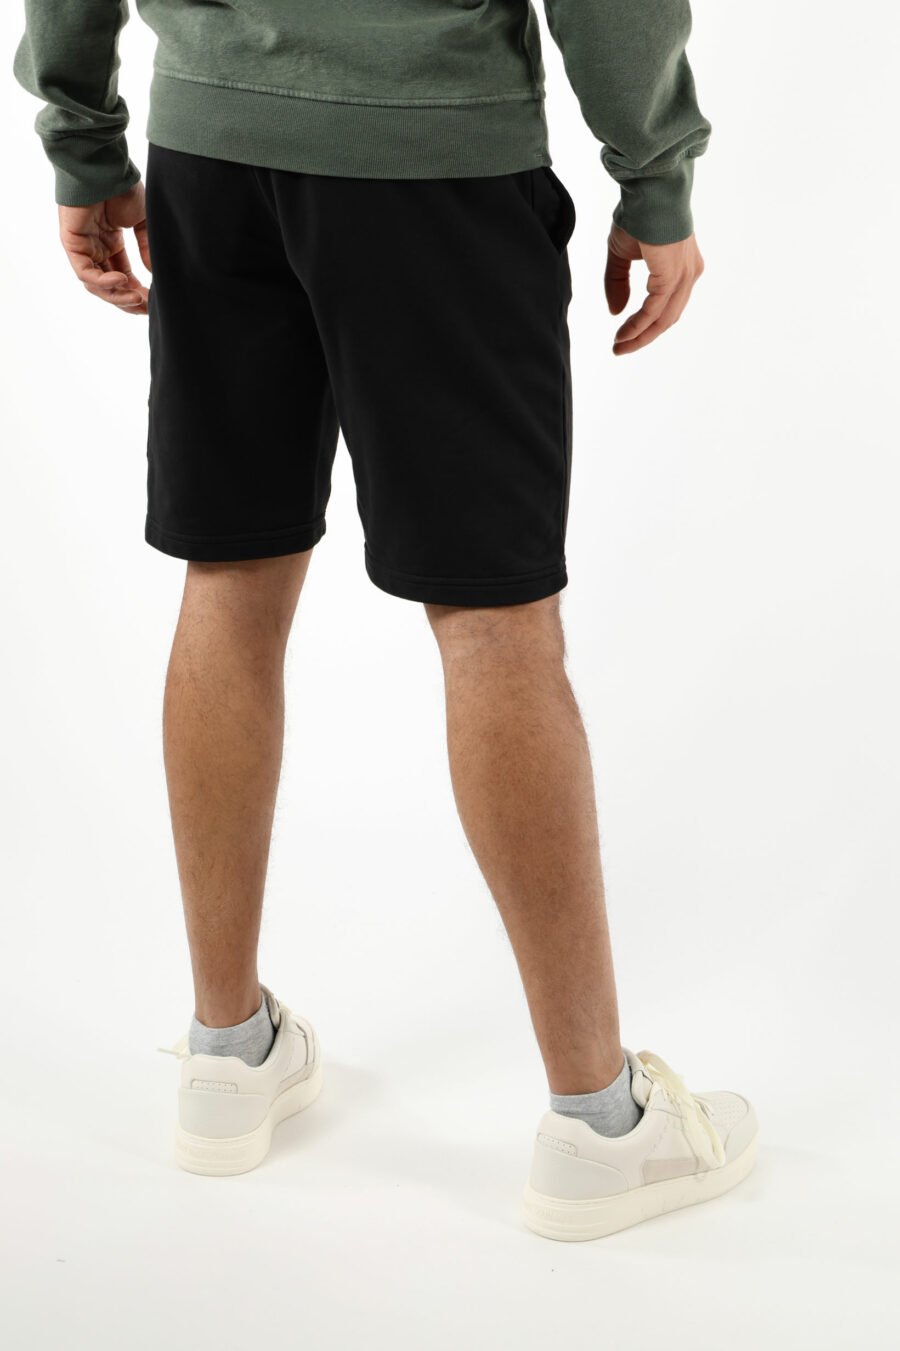 Pantalón de chándal corto negro con logo parche brújula - 111398